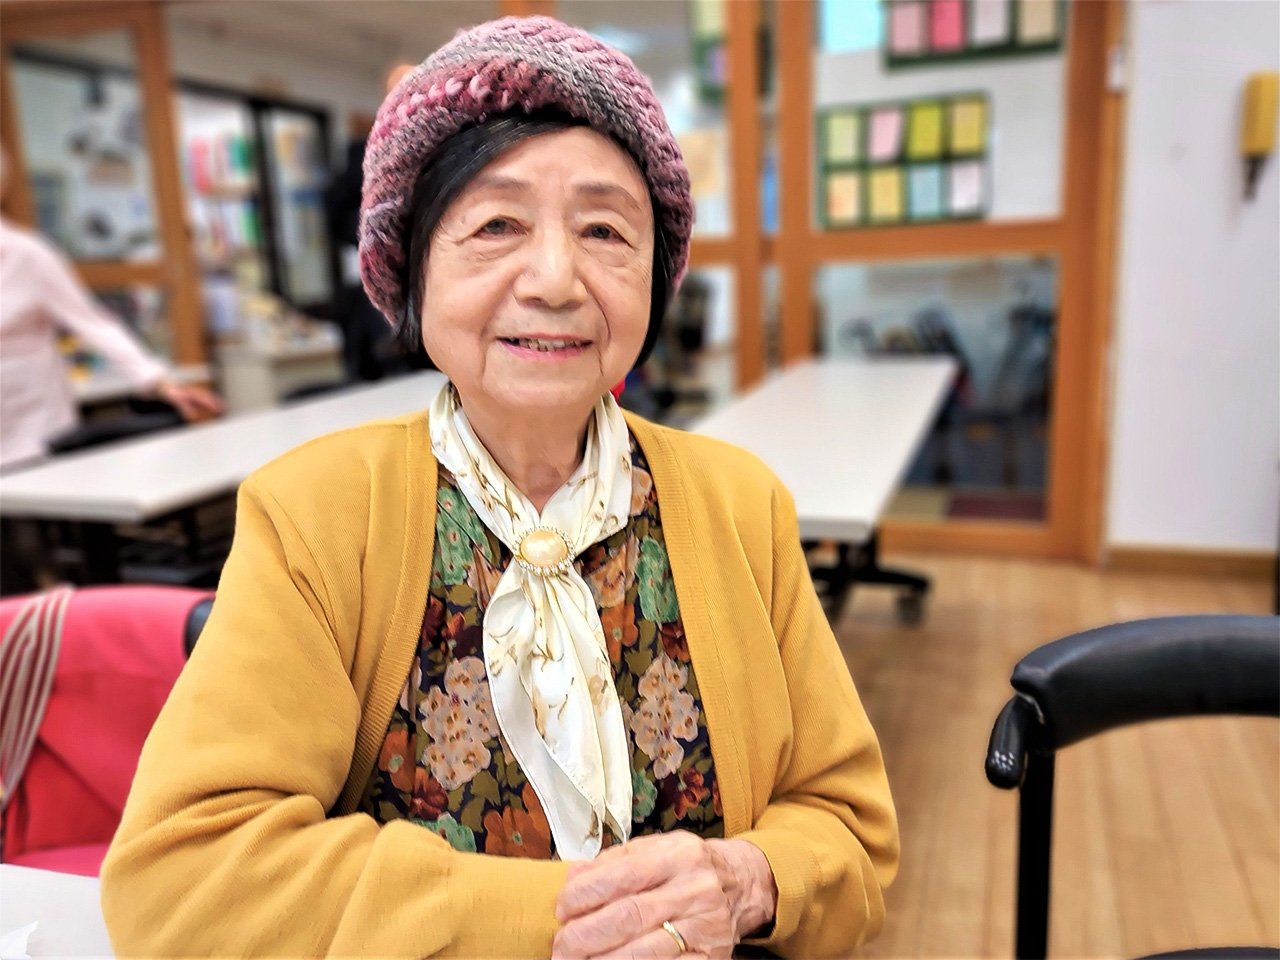 我在以日文為主進行交流的文化活動中心「玉蘭莊」認識了謝靜意女士，她也就是所謂臺灣的「日語世代」（日本時代在臺灣出生、接受日語教育的人）